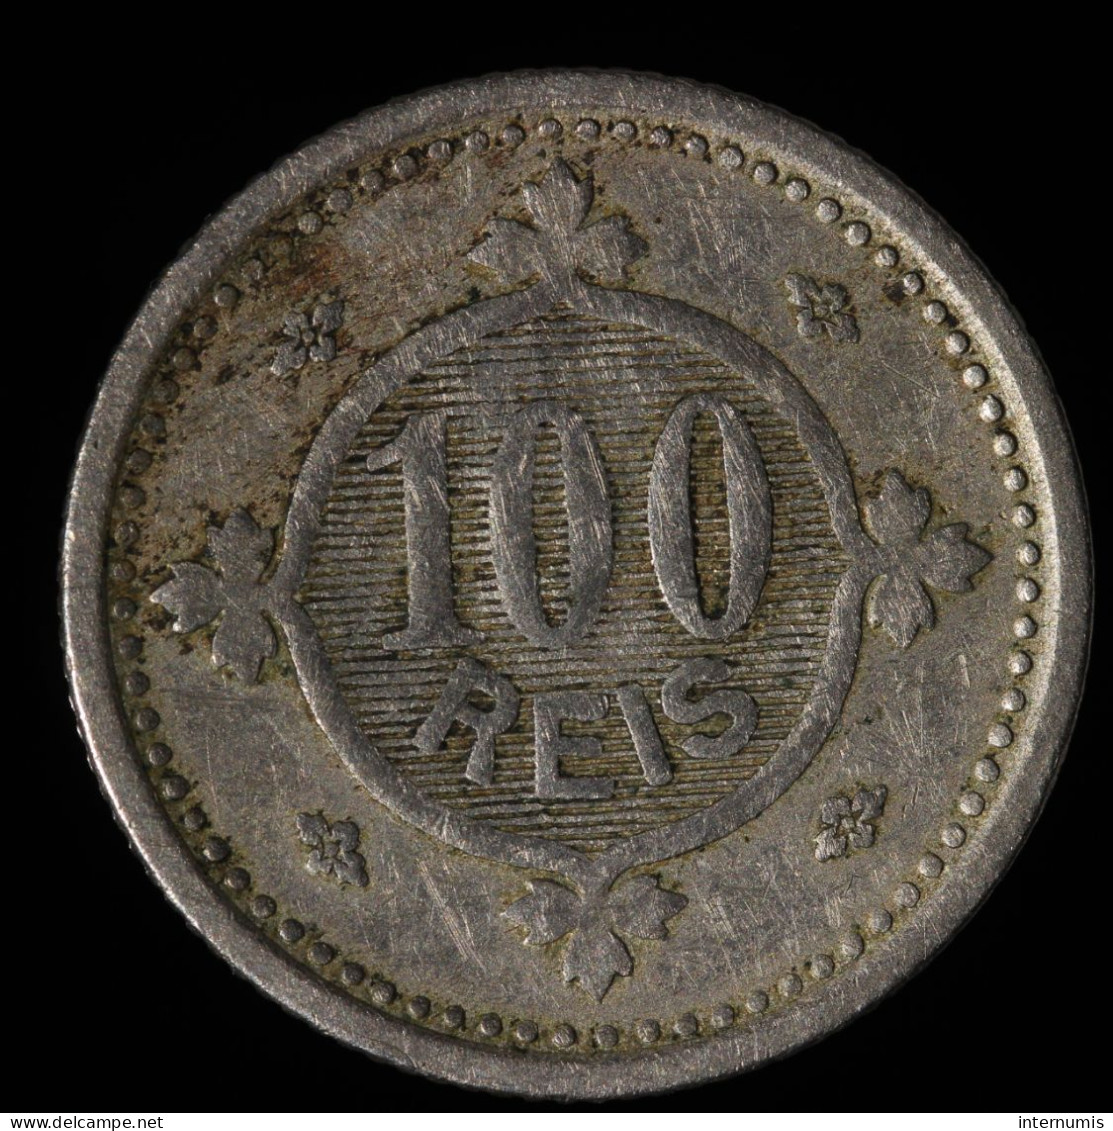  Portugal, Carlos I, 100 Reis, 1900, , Cu-N (Copper-Nickel), TB+ (VF),
KM#546 - Portugal